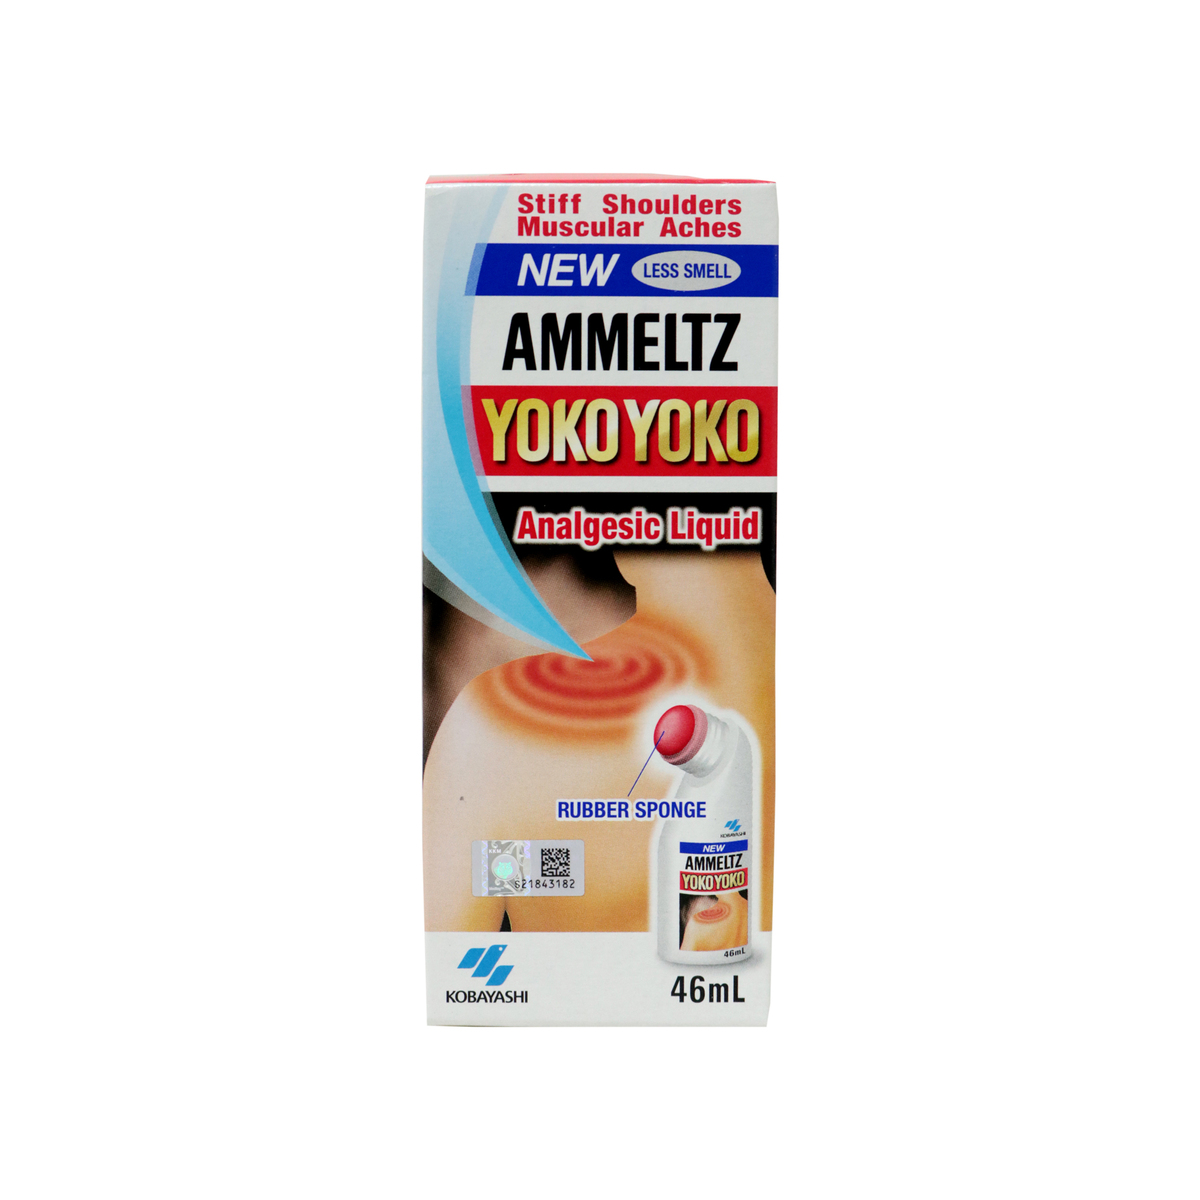 Ammeltz Yoko Yoko Less Smell Analgestic Liquid 46ml